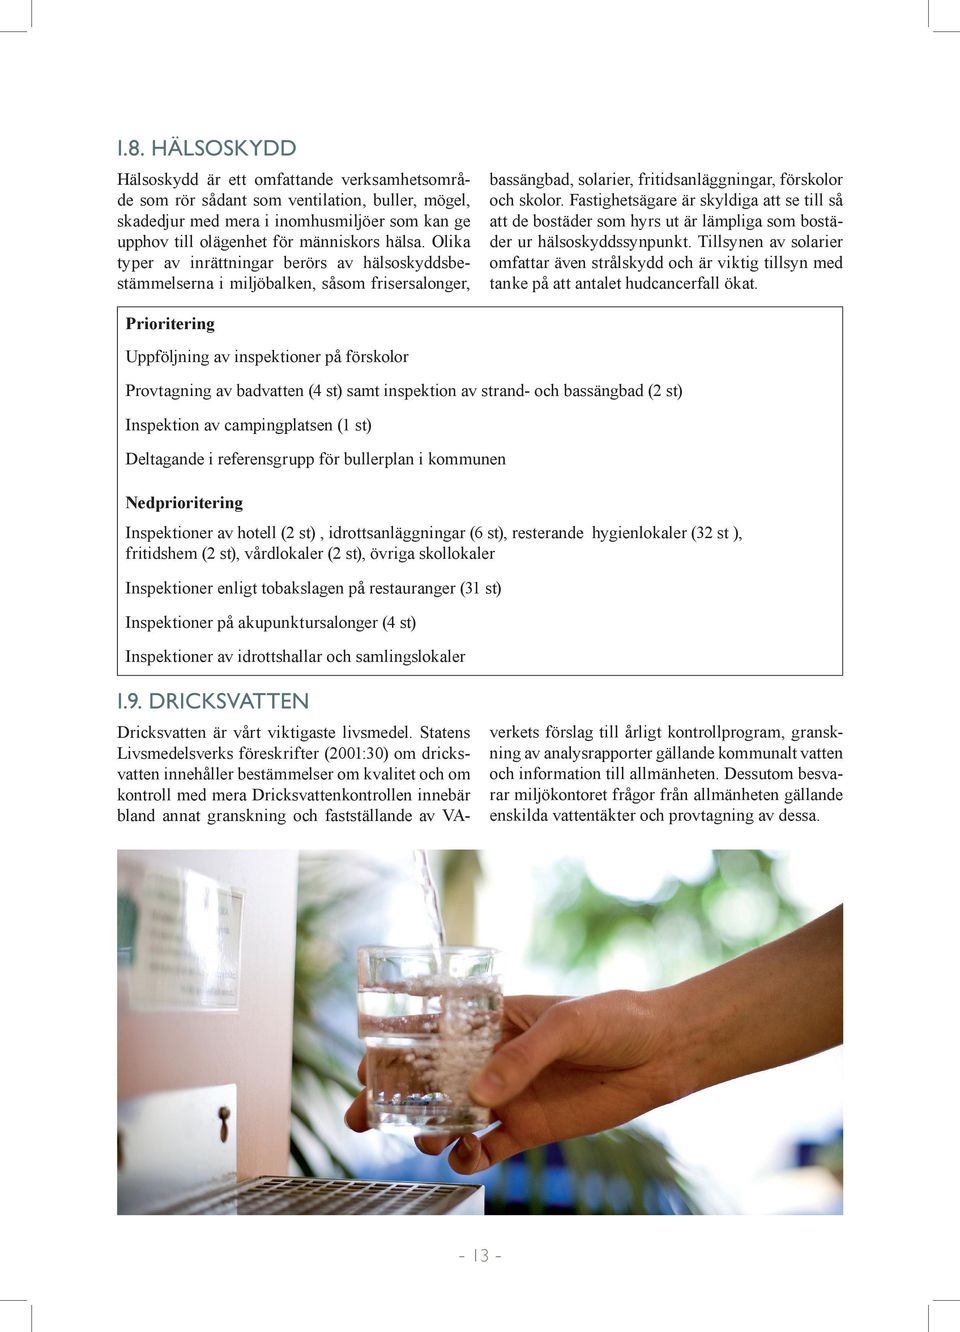 Statens Livsmedelsverks föreskrifter (2001:30) om dricksvatten innehåller bestämmelser om kvalitet och om kontroll med mera Dricksvattenkontrollen innebär bland annat granskning och fastställande av